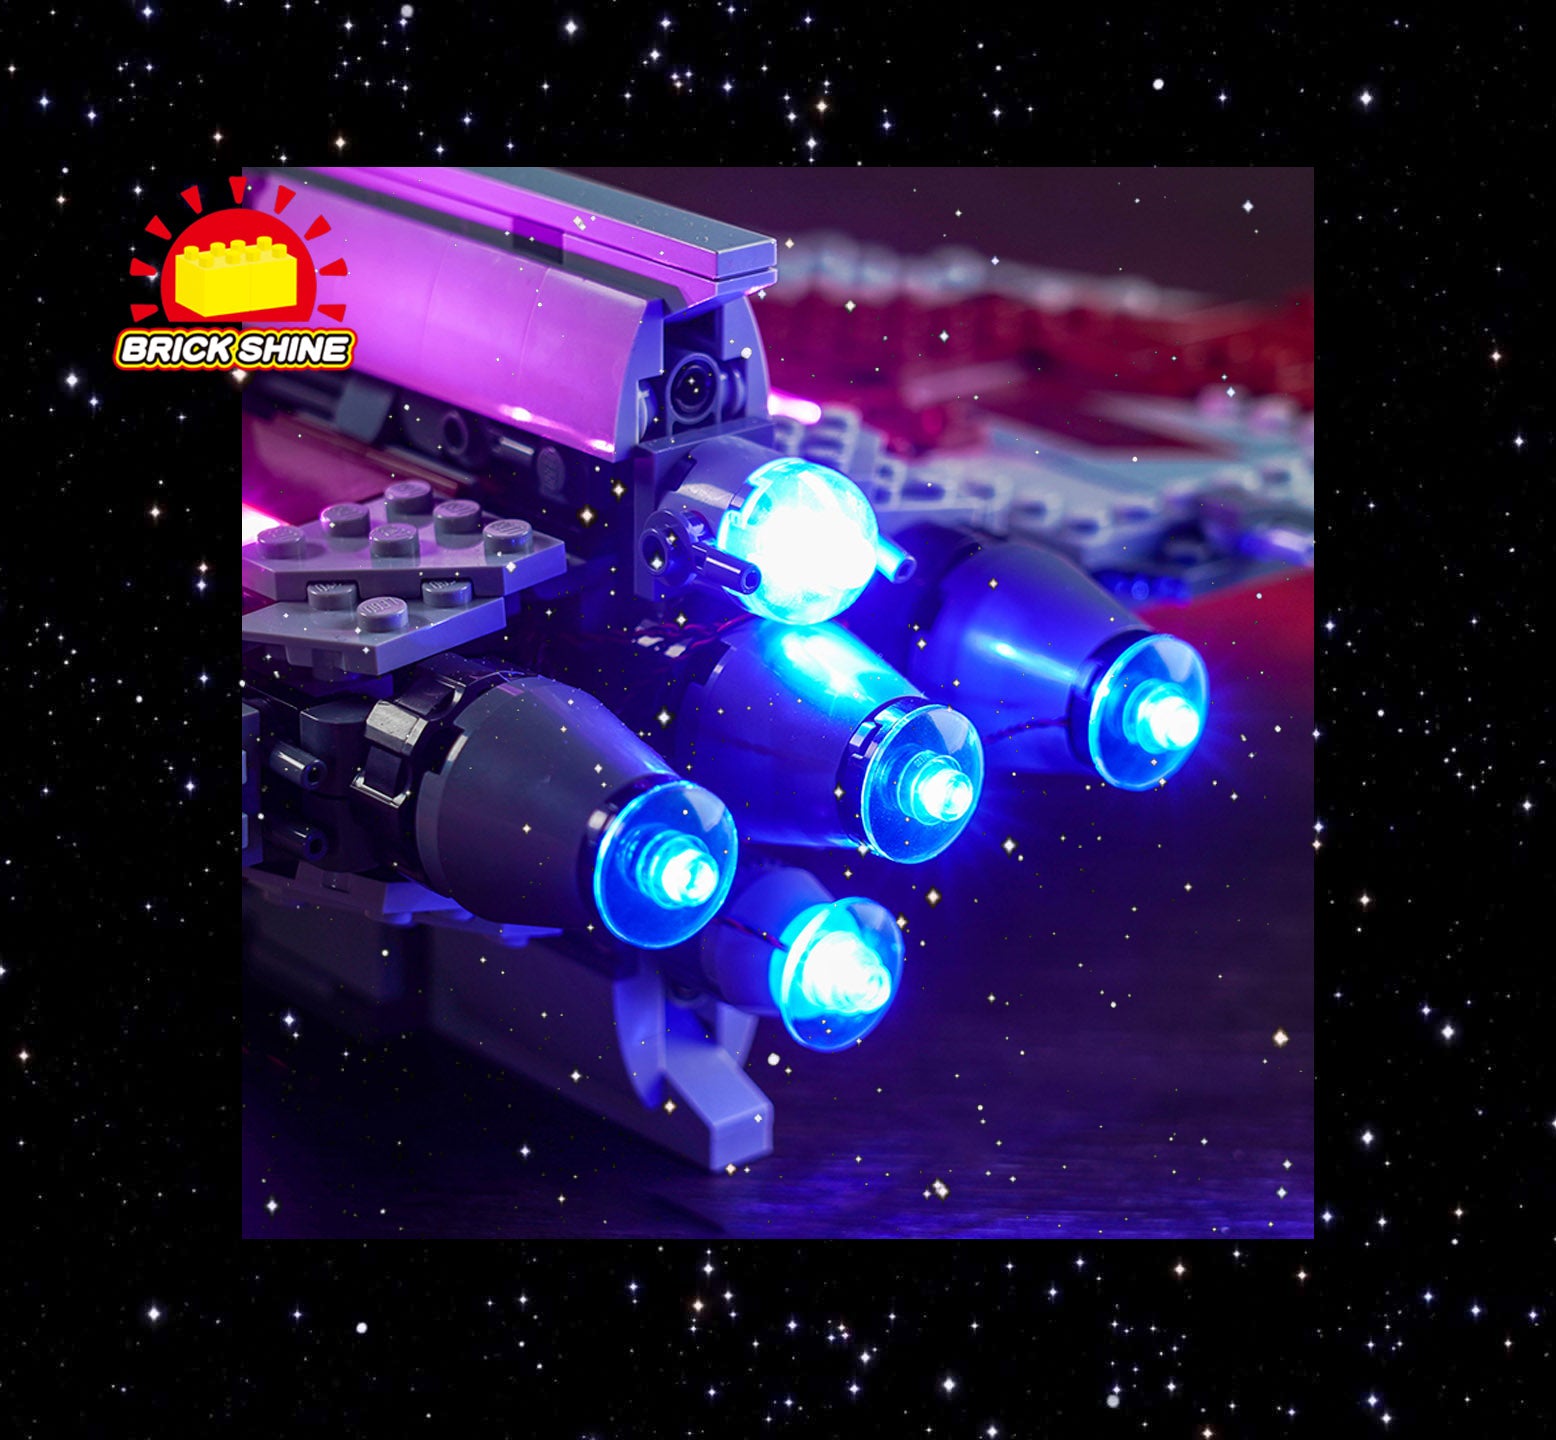  DALDED LED Lighting Kit for Lego Star Wars Ahsoka